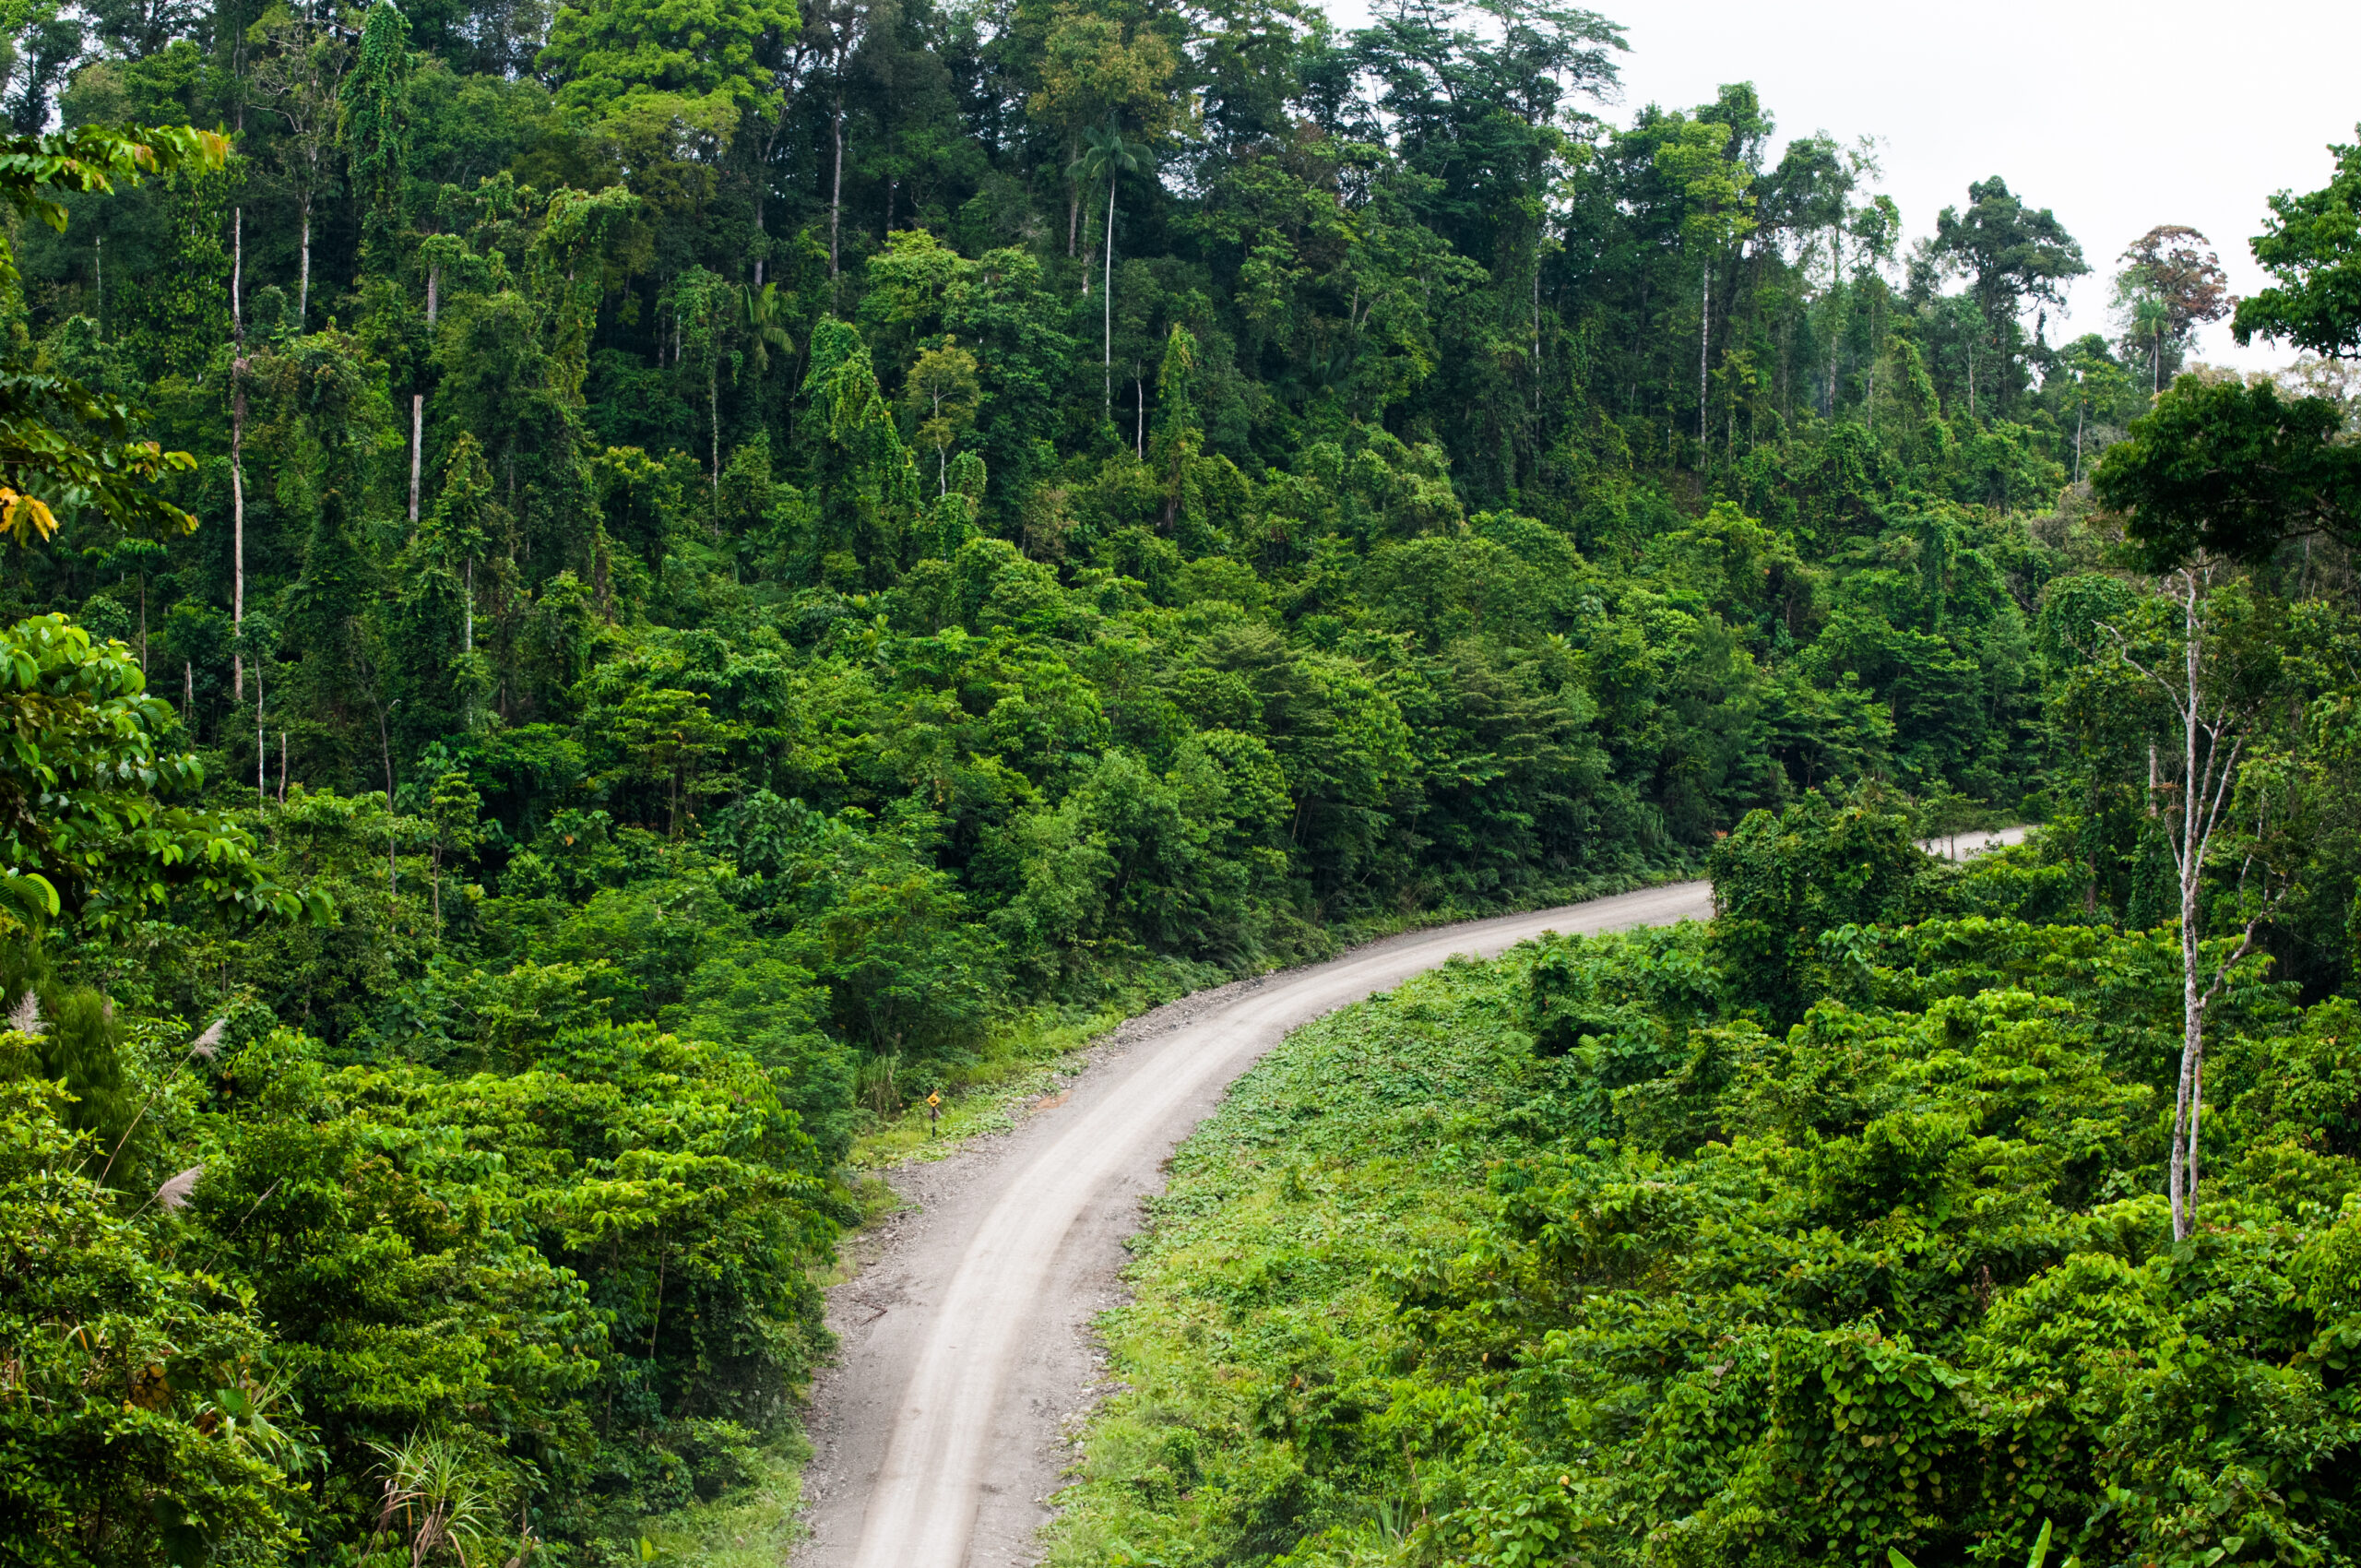 Logging roads in Papua province, Indonesia